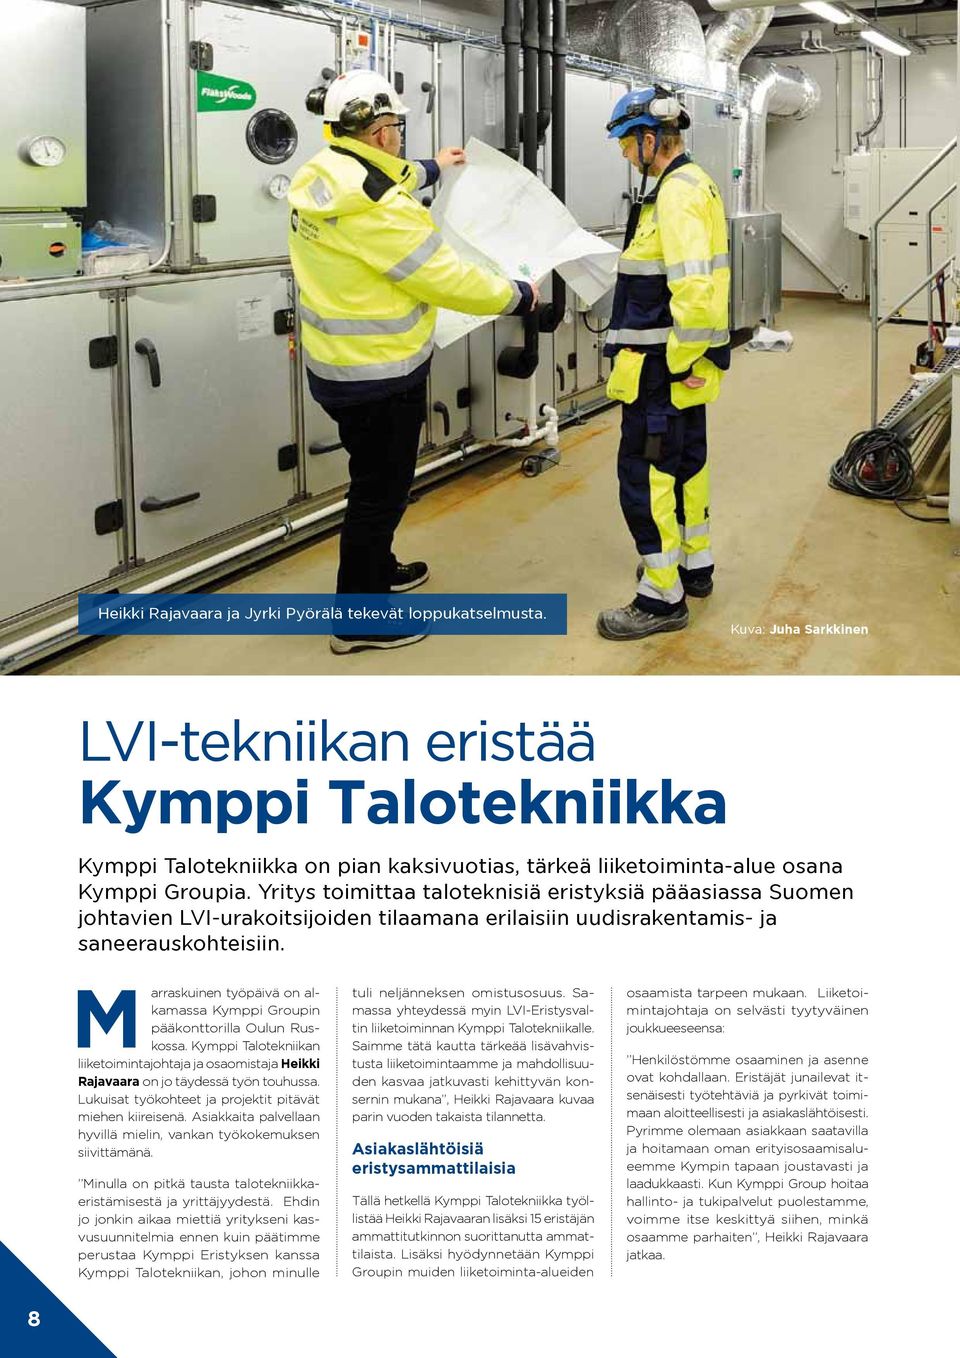 Yritys toimittaa taloteknisiä eristyksiä pääasiassa Suomen johtavien LVI-urakoitsijoiden tilaamana erilaisiin uudisrakentamis- ja saneerauskohteisiin.